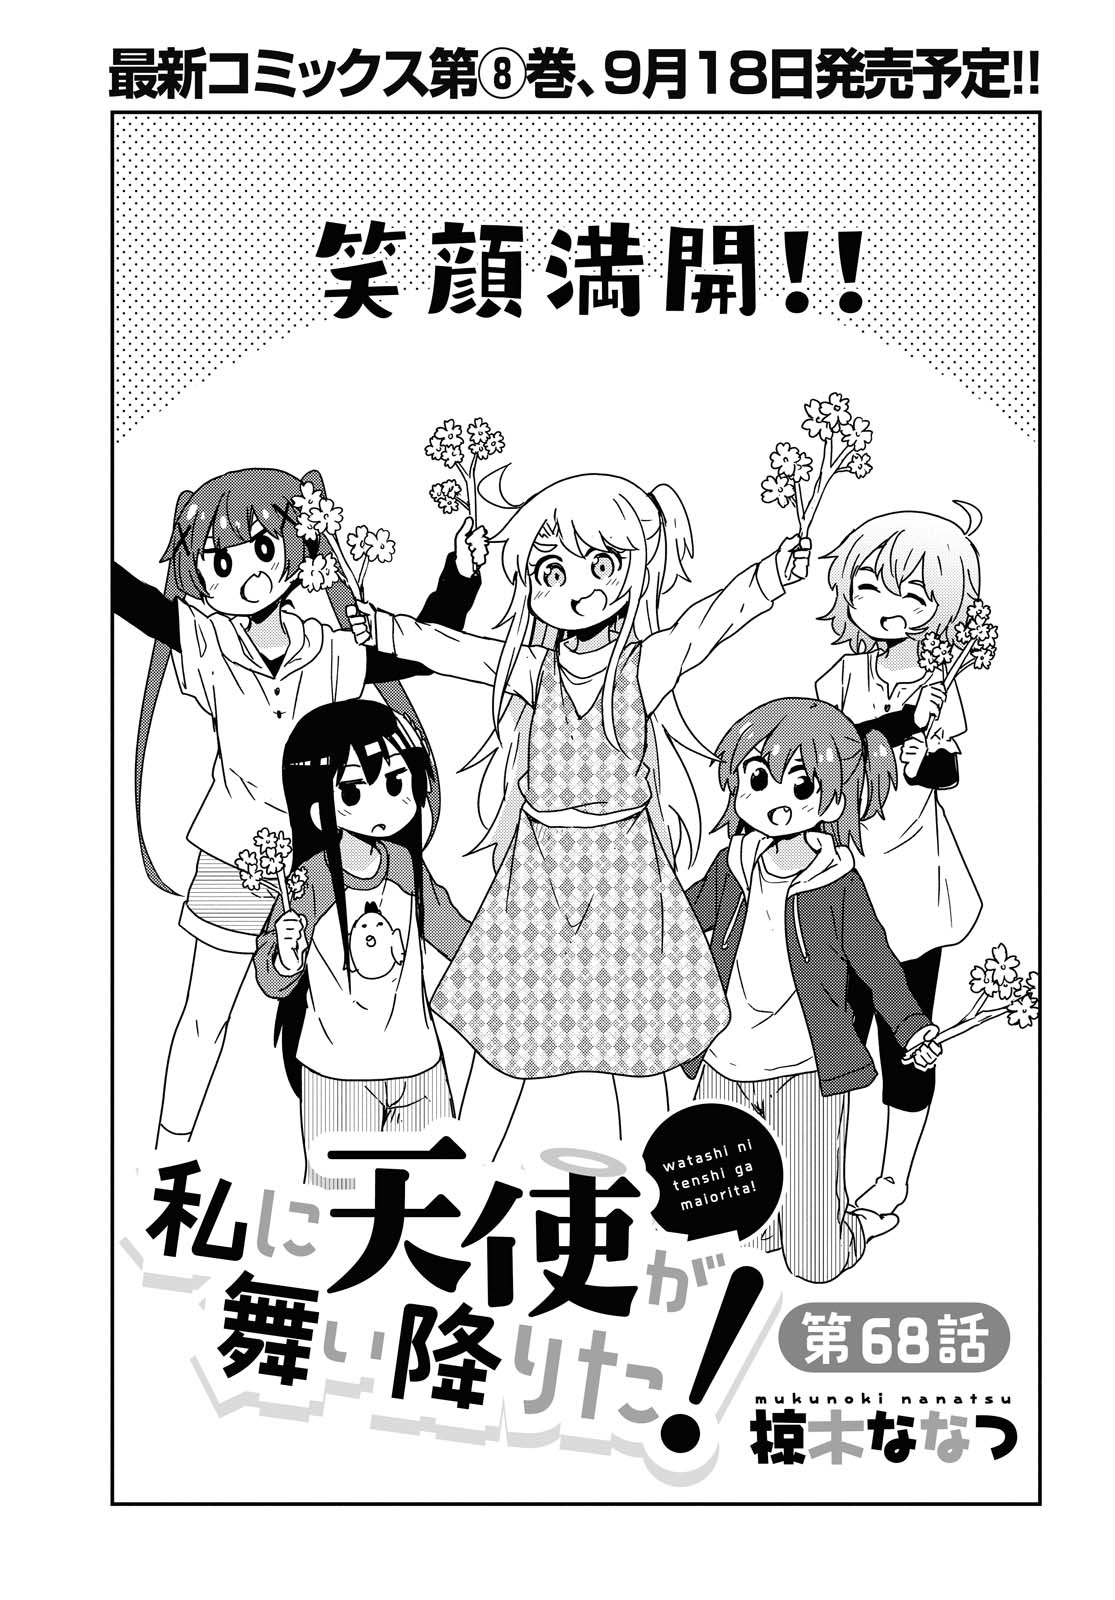 Watashi ni Tenshi ga Maiorita! - Chapter 68 - Page 1